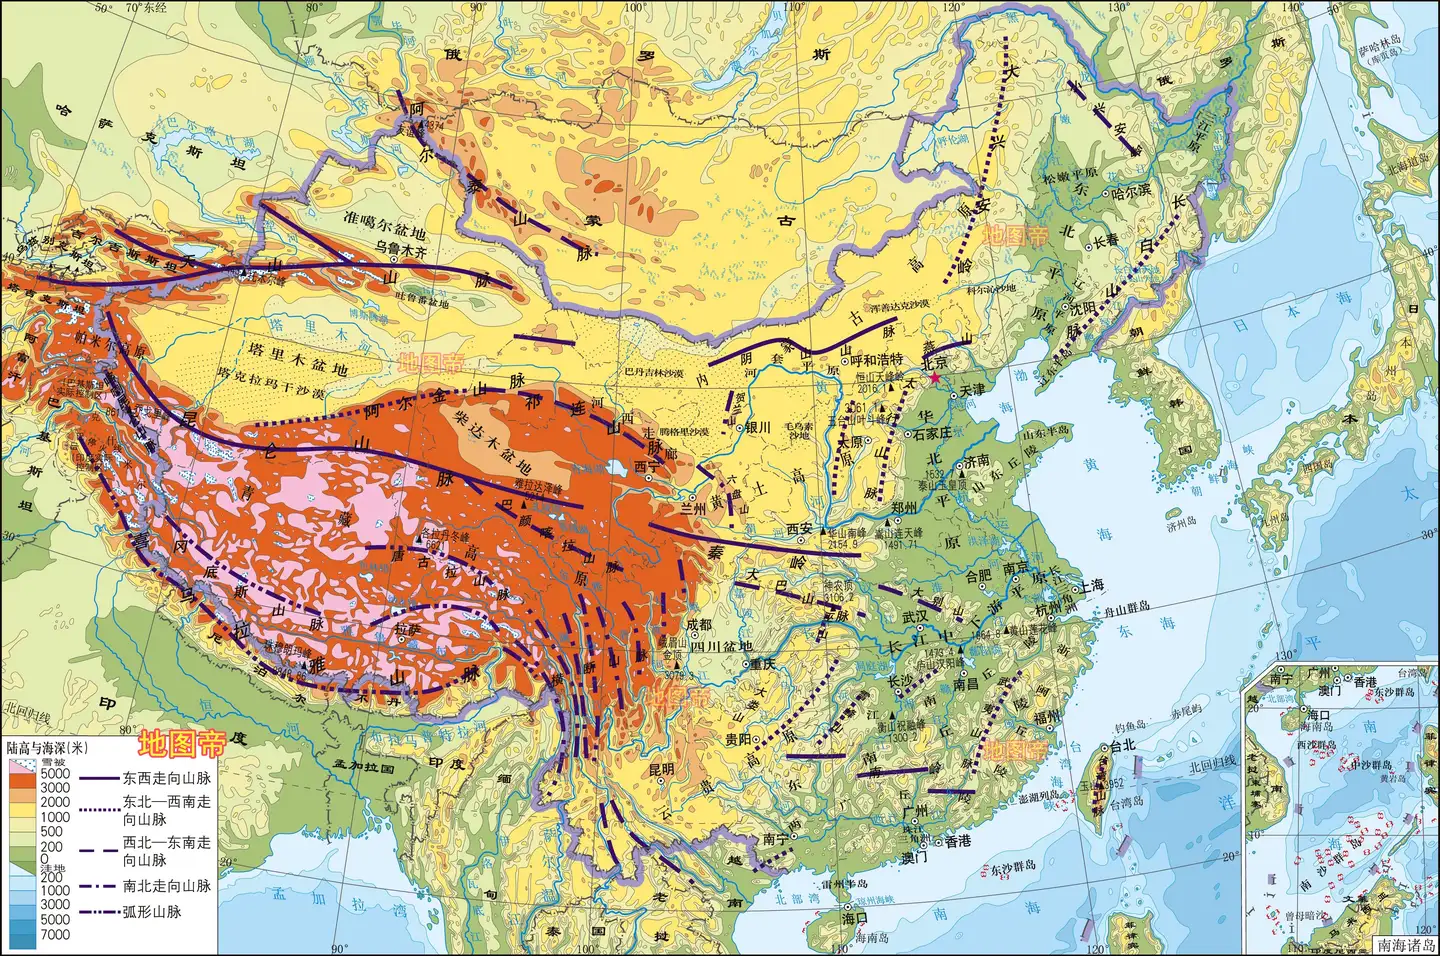 中国局部地形图 7图 知乎